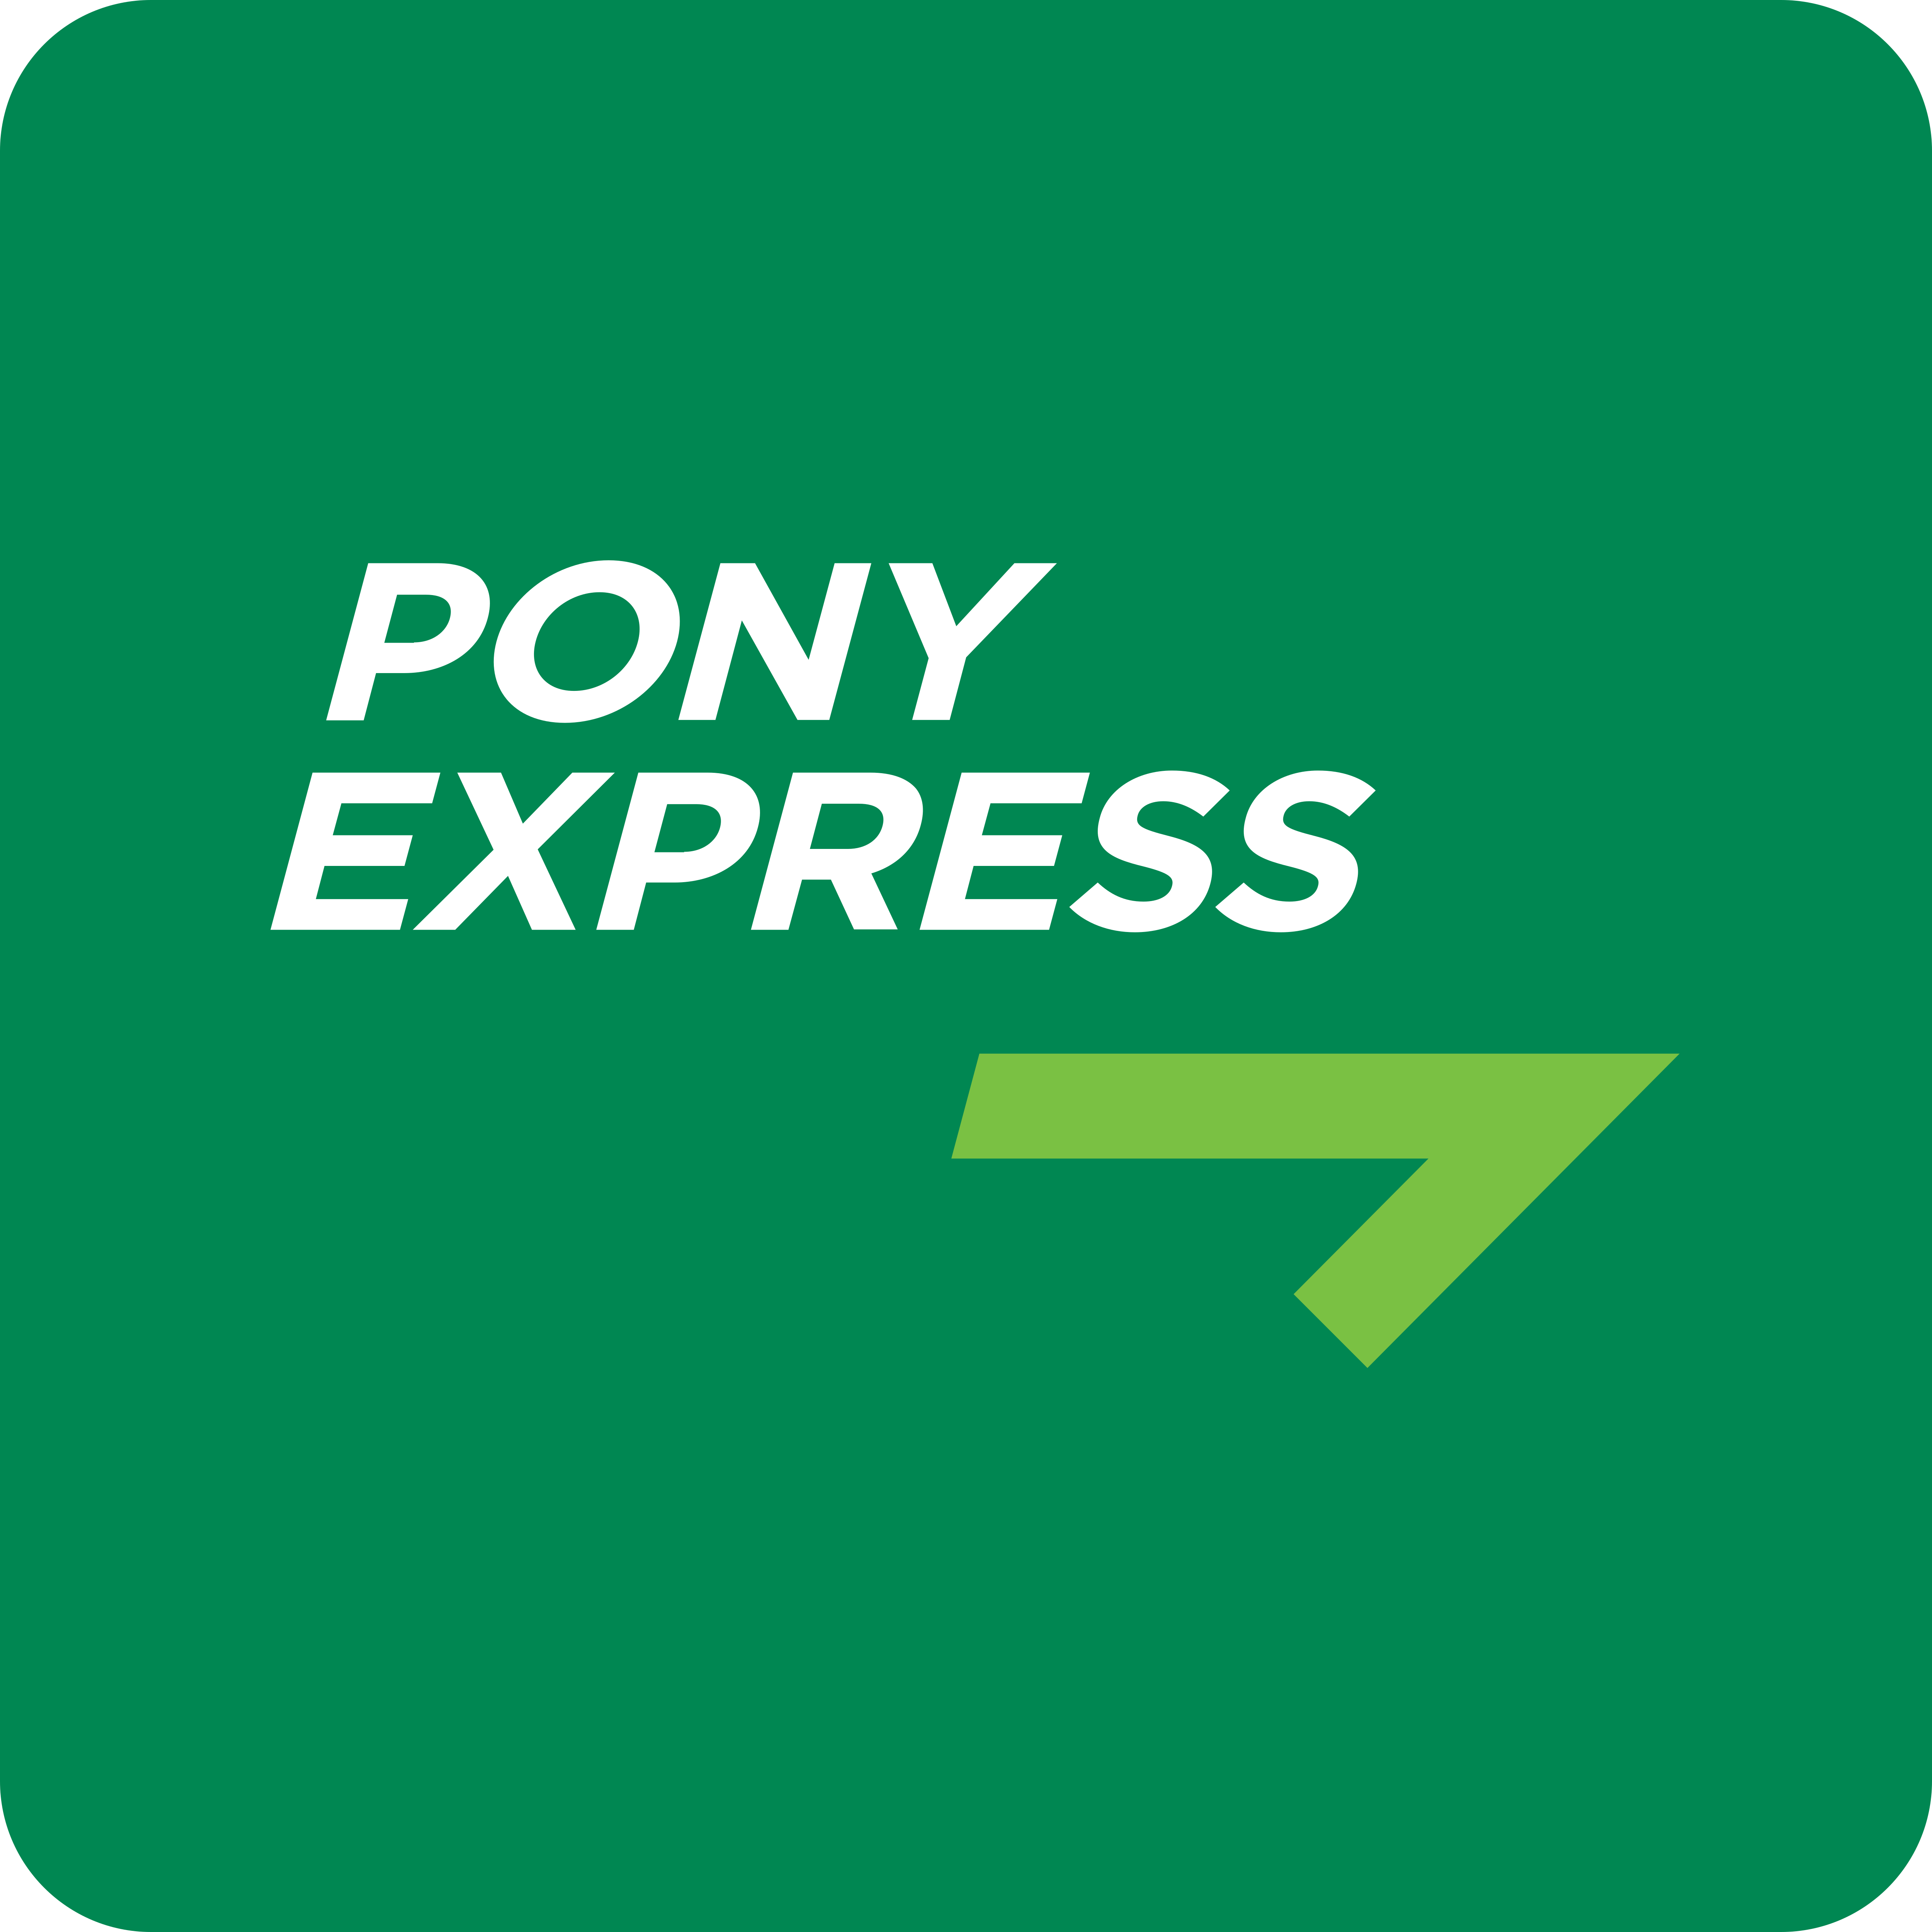 Пони экспресс. Pony Express логотип. Пони экспресс иконка. Курьерская служба пони экспресс. Номера pony express